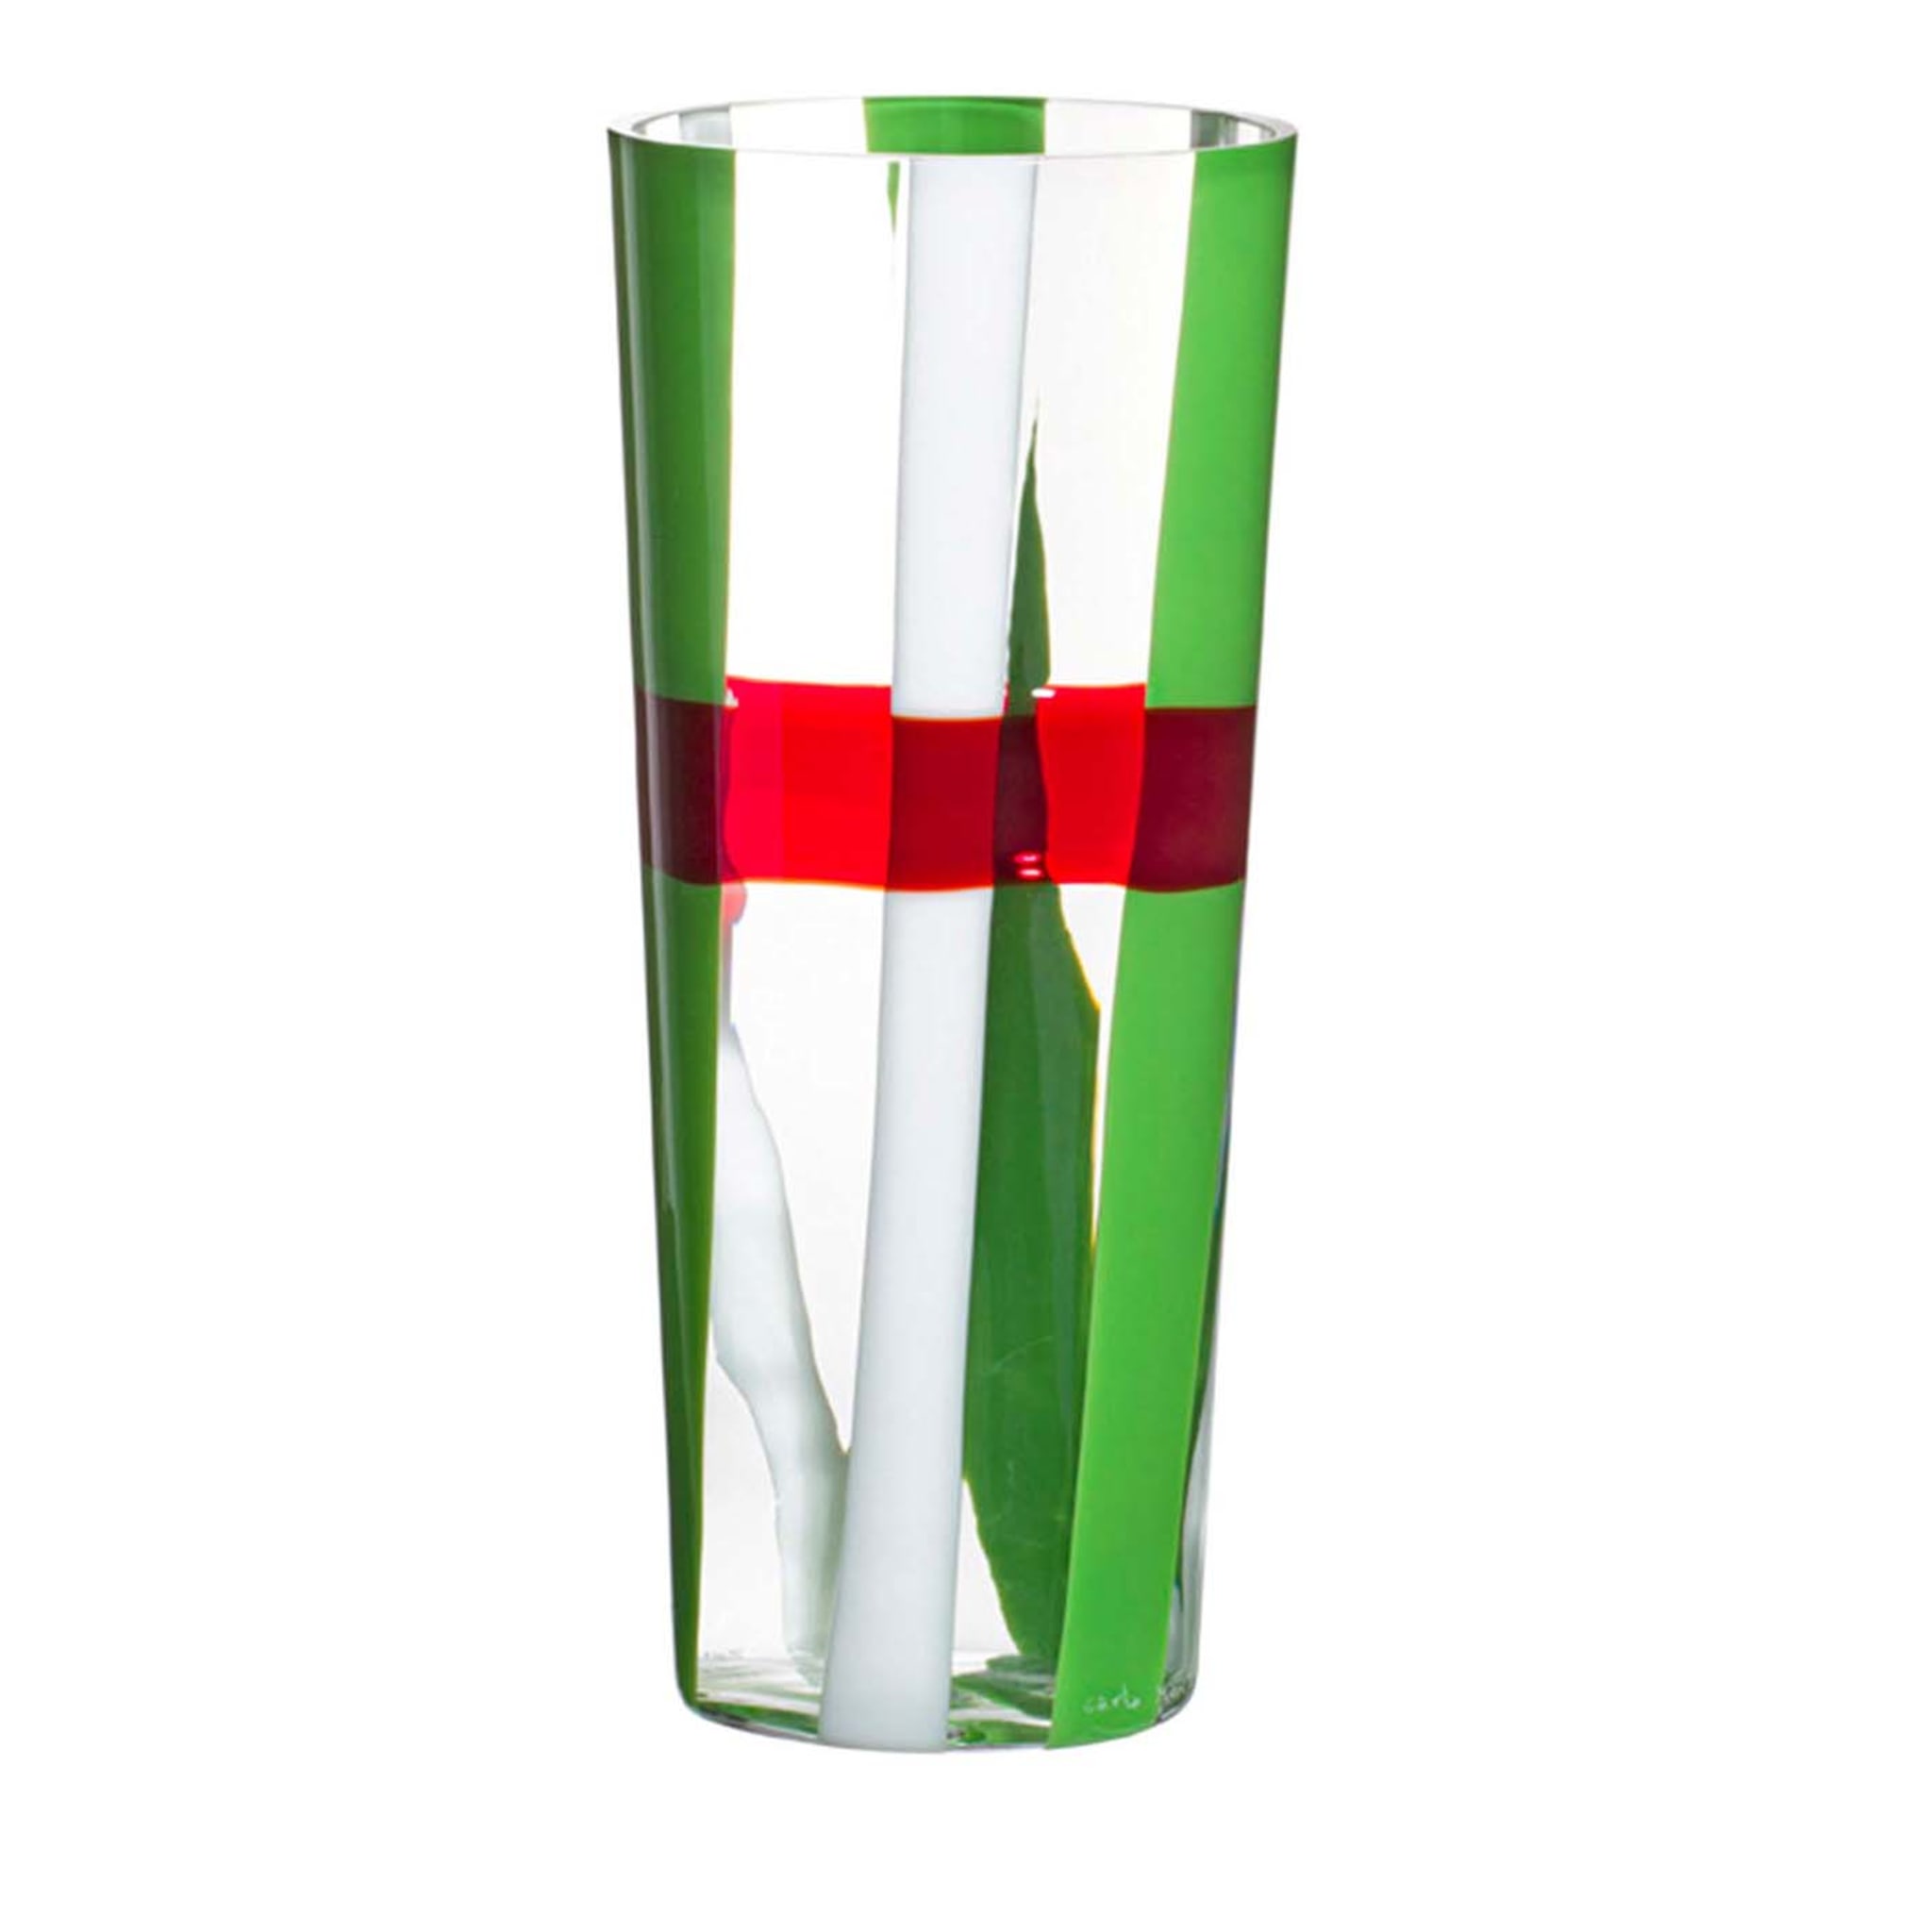 Vase à rayures vertes, blanches et rouges Troncocono de Carlo Moretti - Vue principale